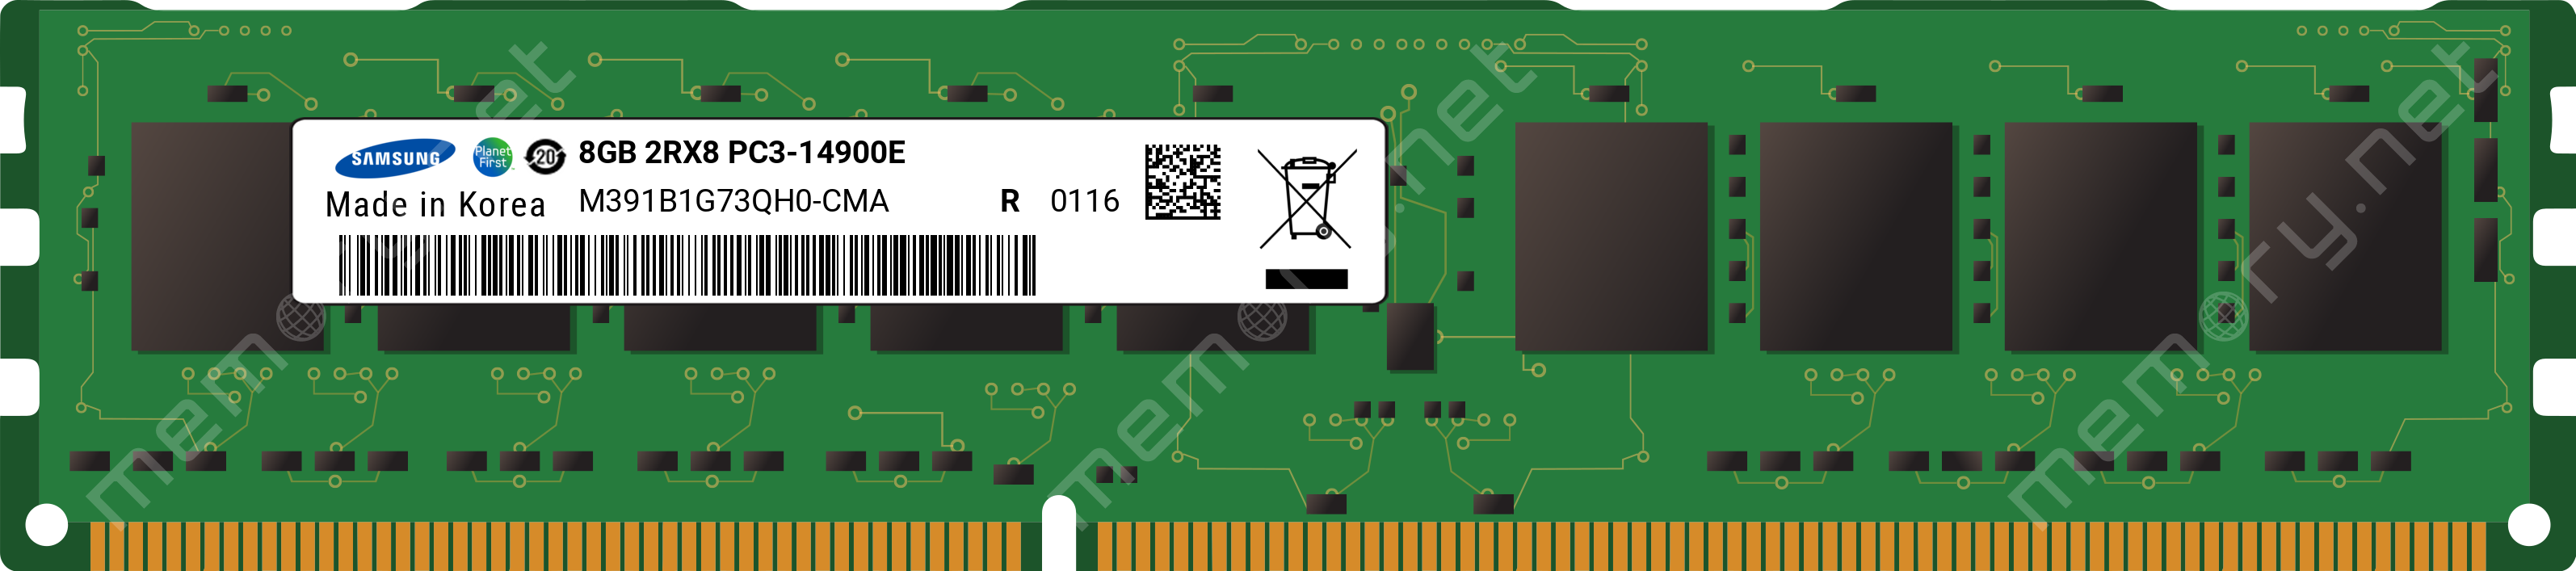 M391B1G73QH0-CMA - Samsung 1x 8GB DDR3-1866 ECC UDIMM PC3-14900E Dual Rank  x8 Module